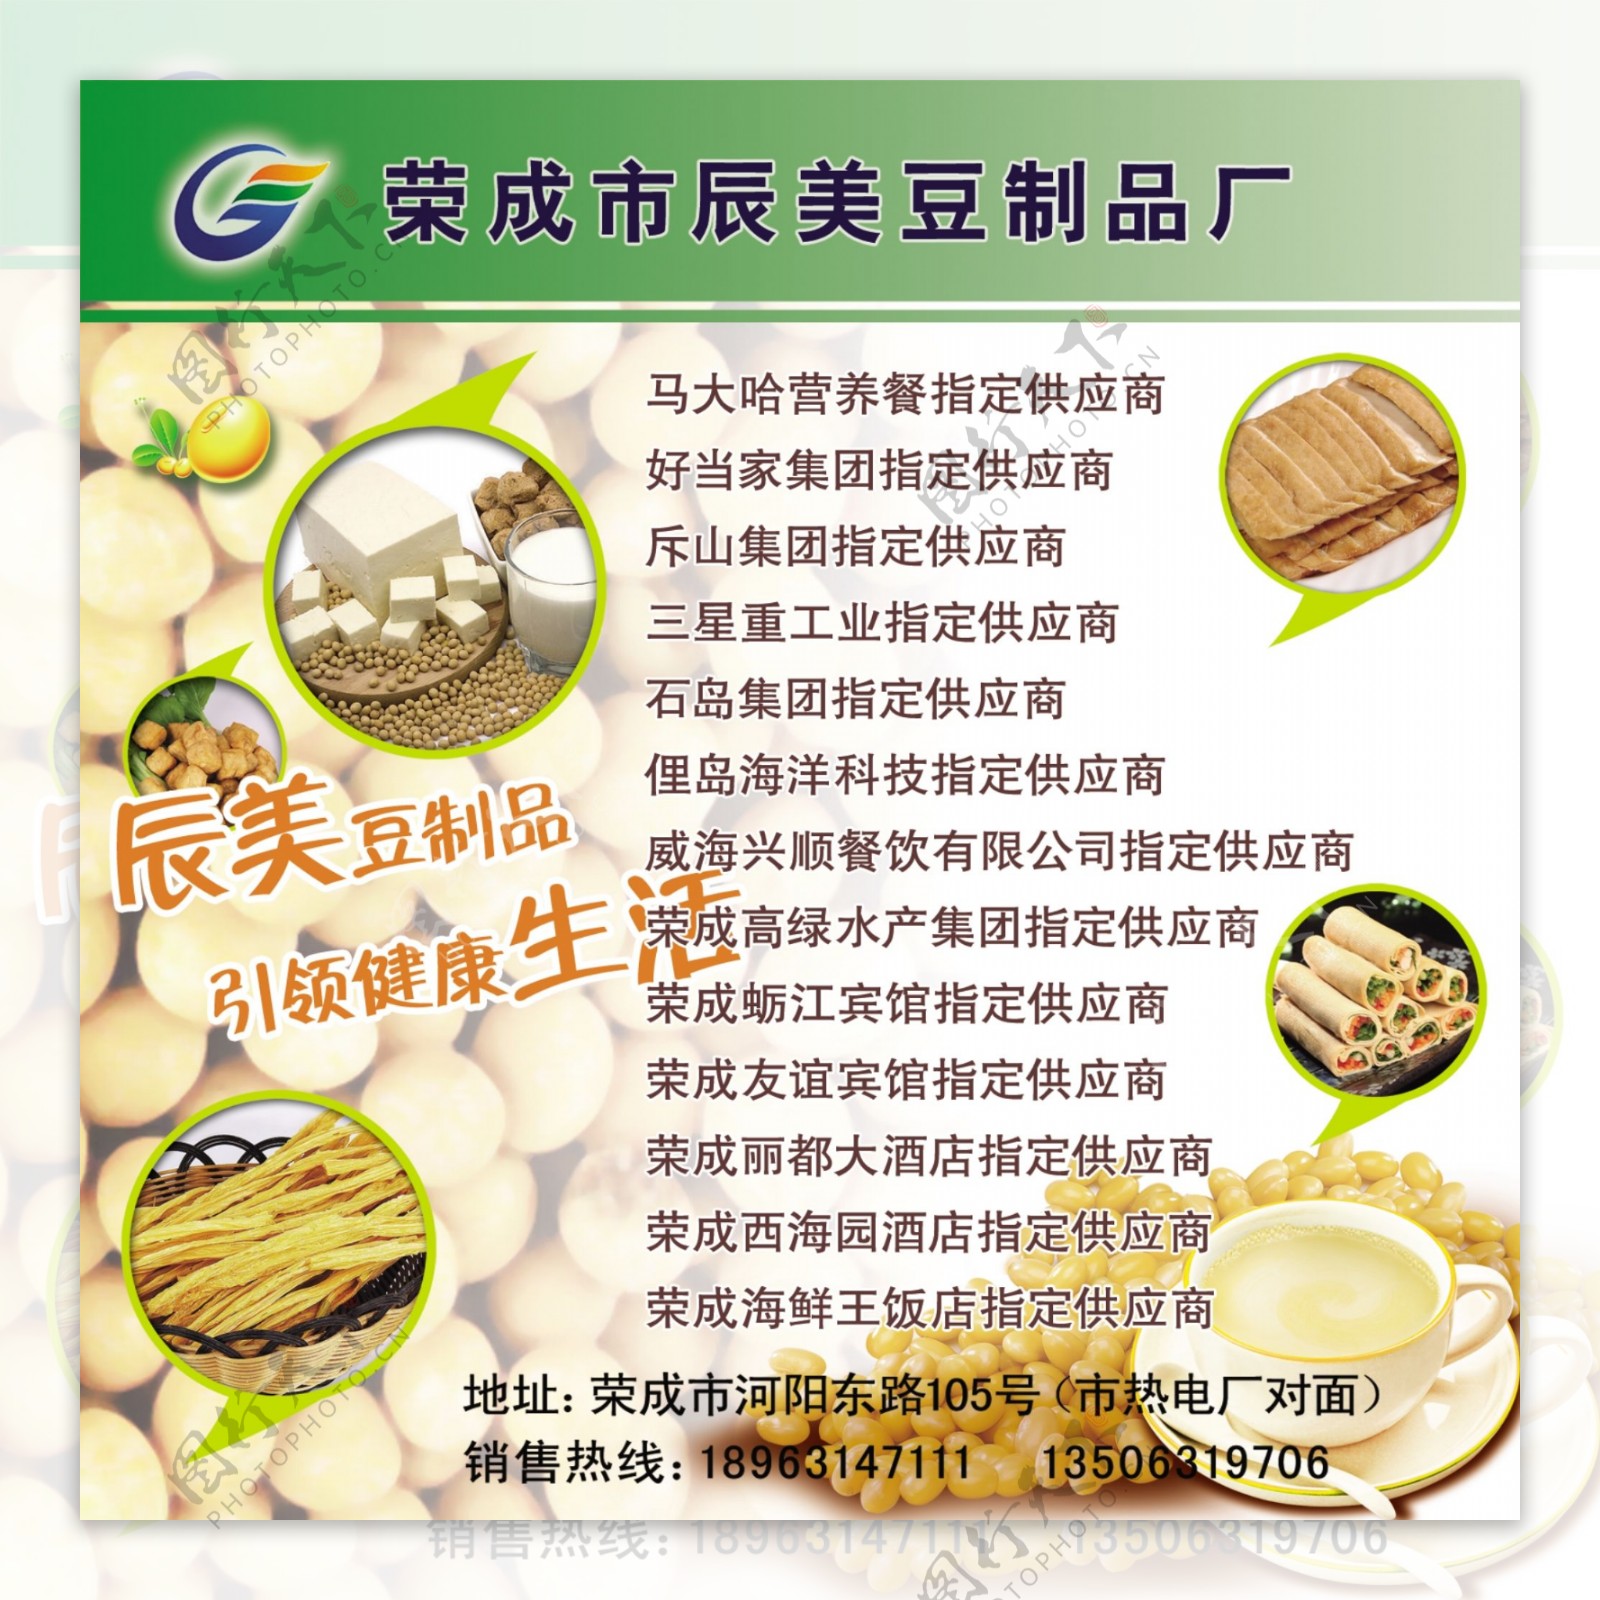 成美豆制品简介及制作流程